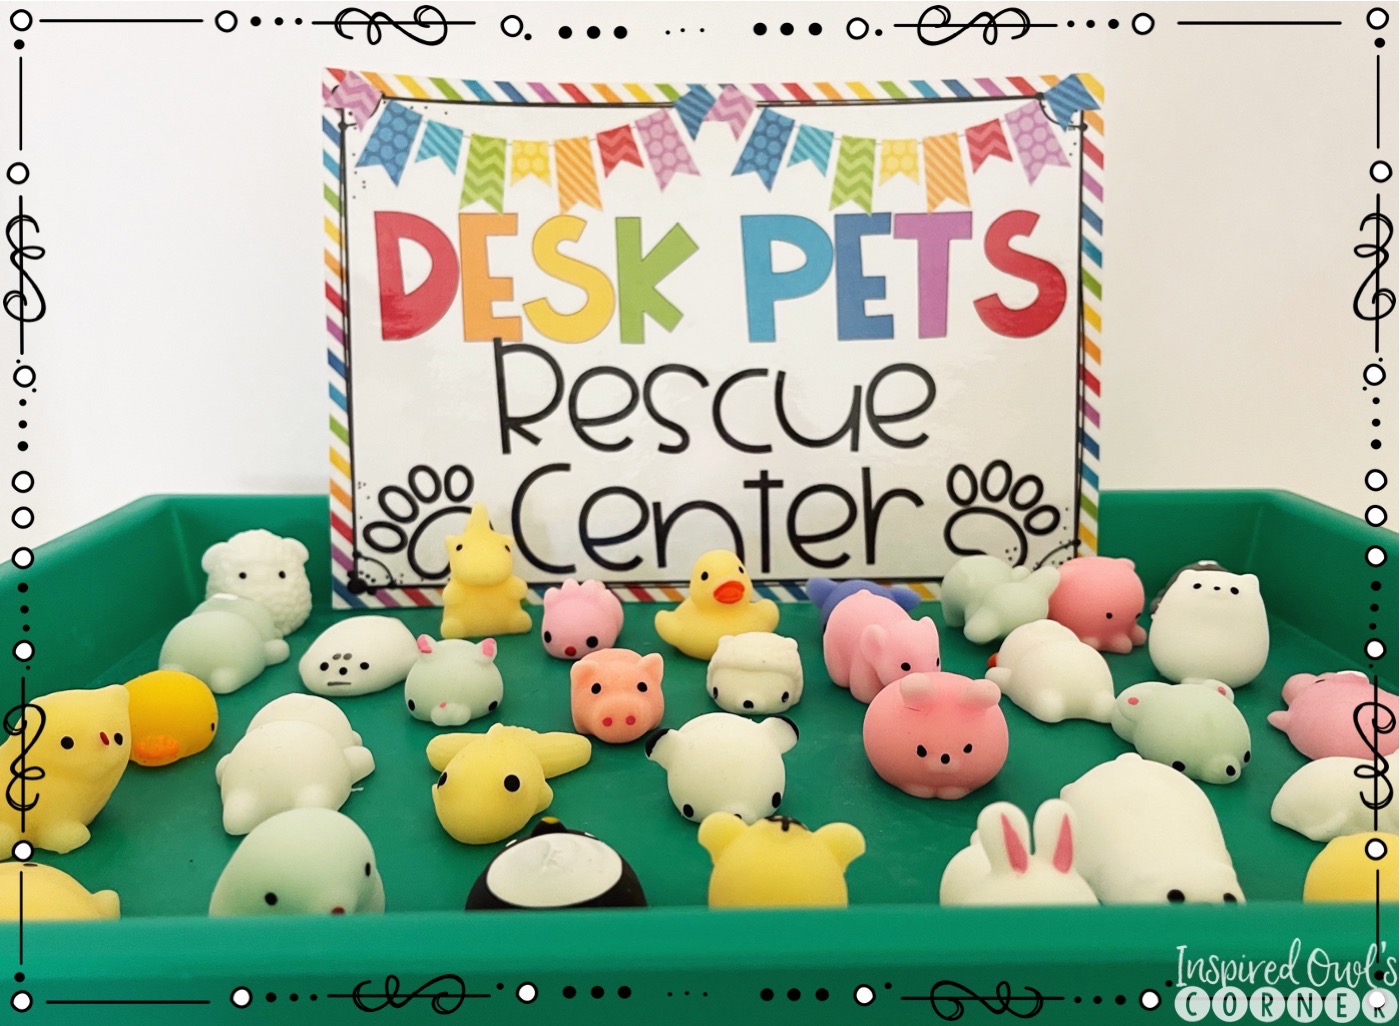 TargetTeachers - @mrskiswardysclass is organizing desk pets with